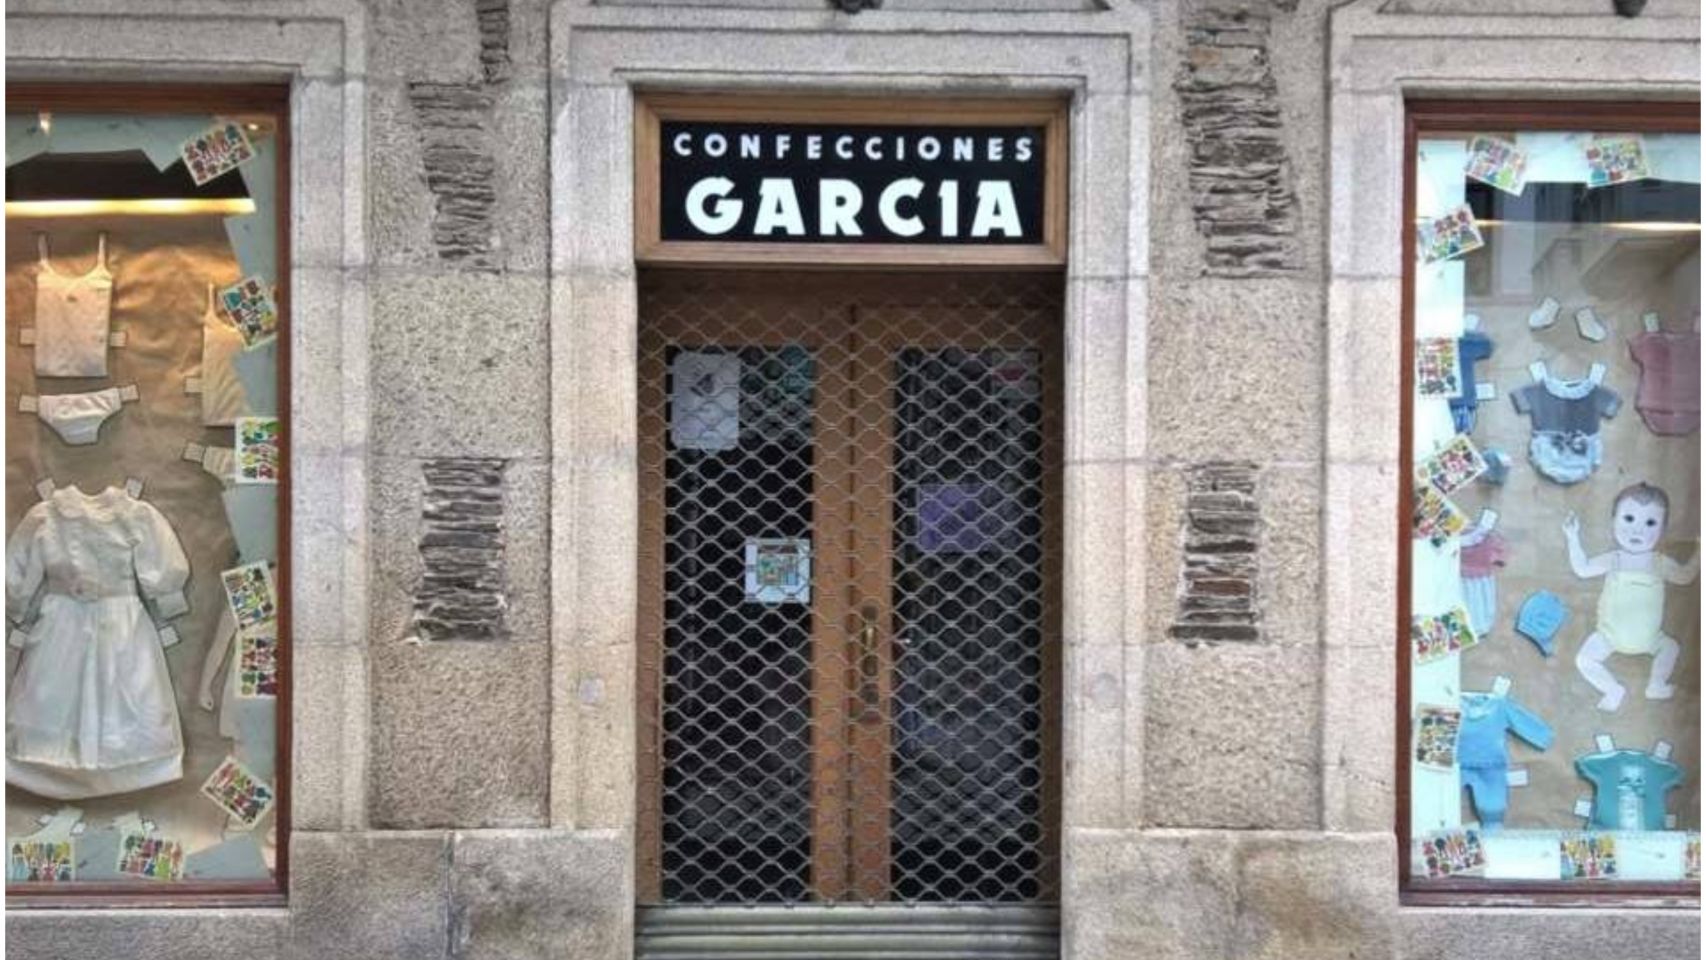 La fachada de Confecciones García.